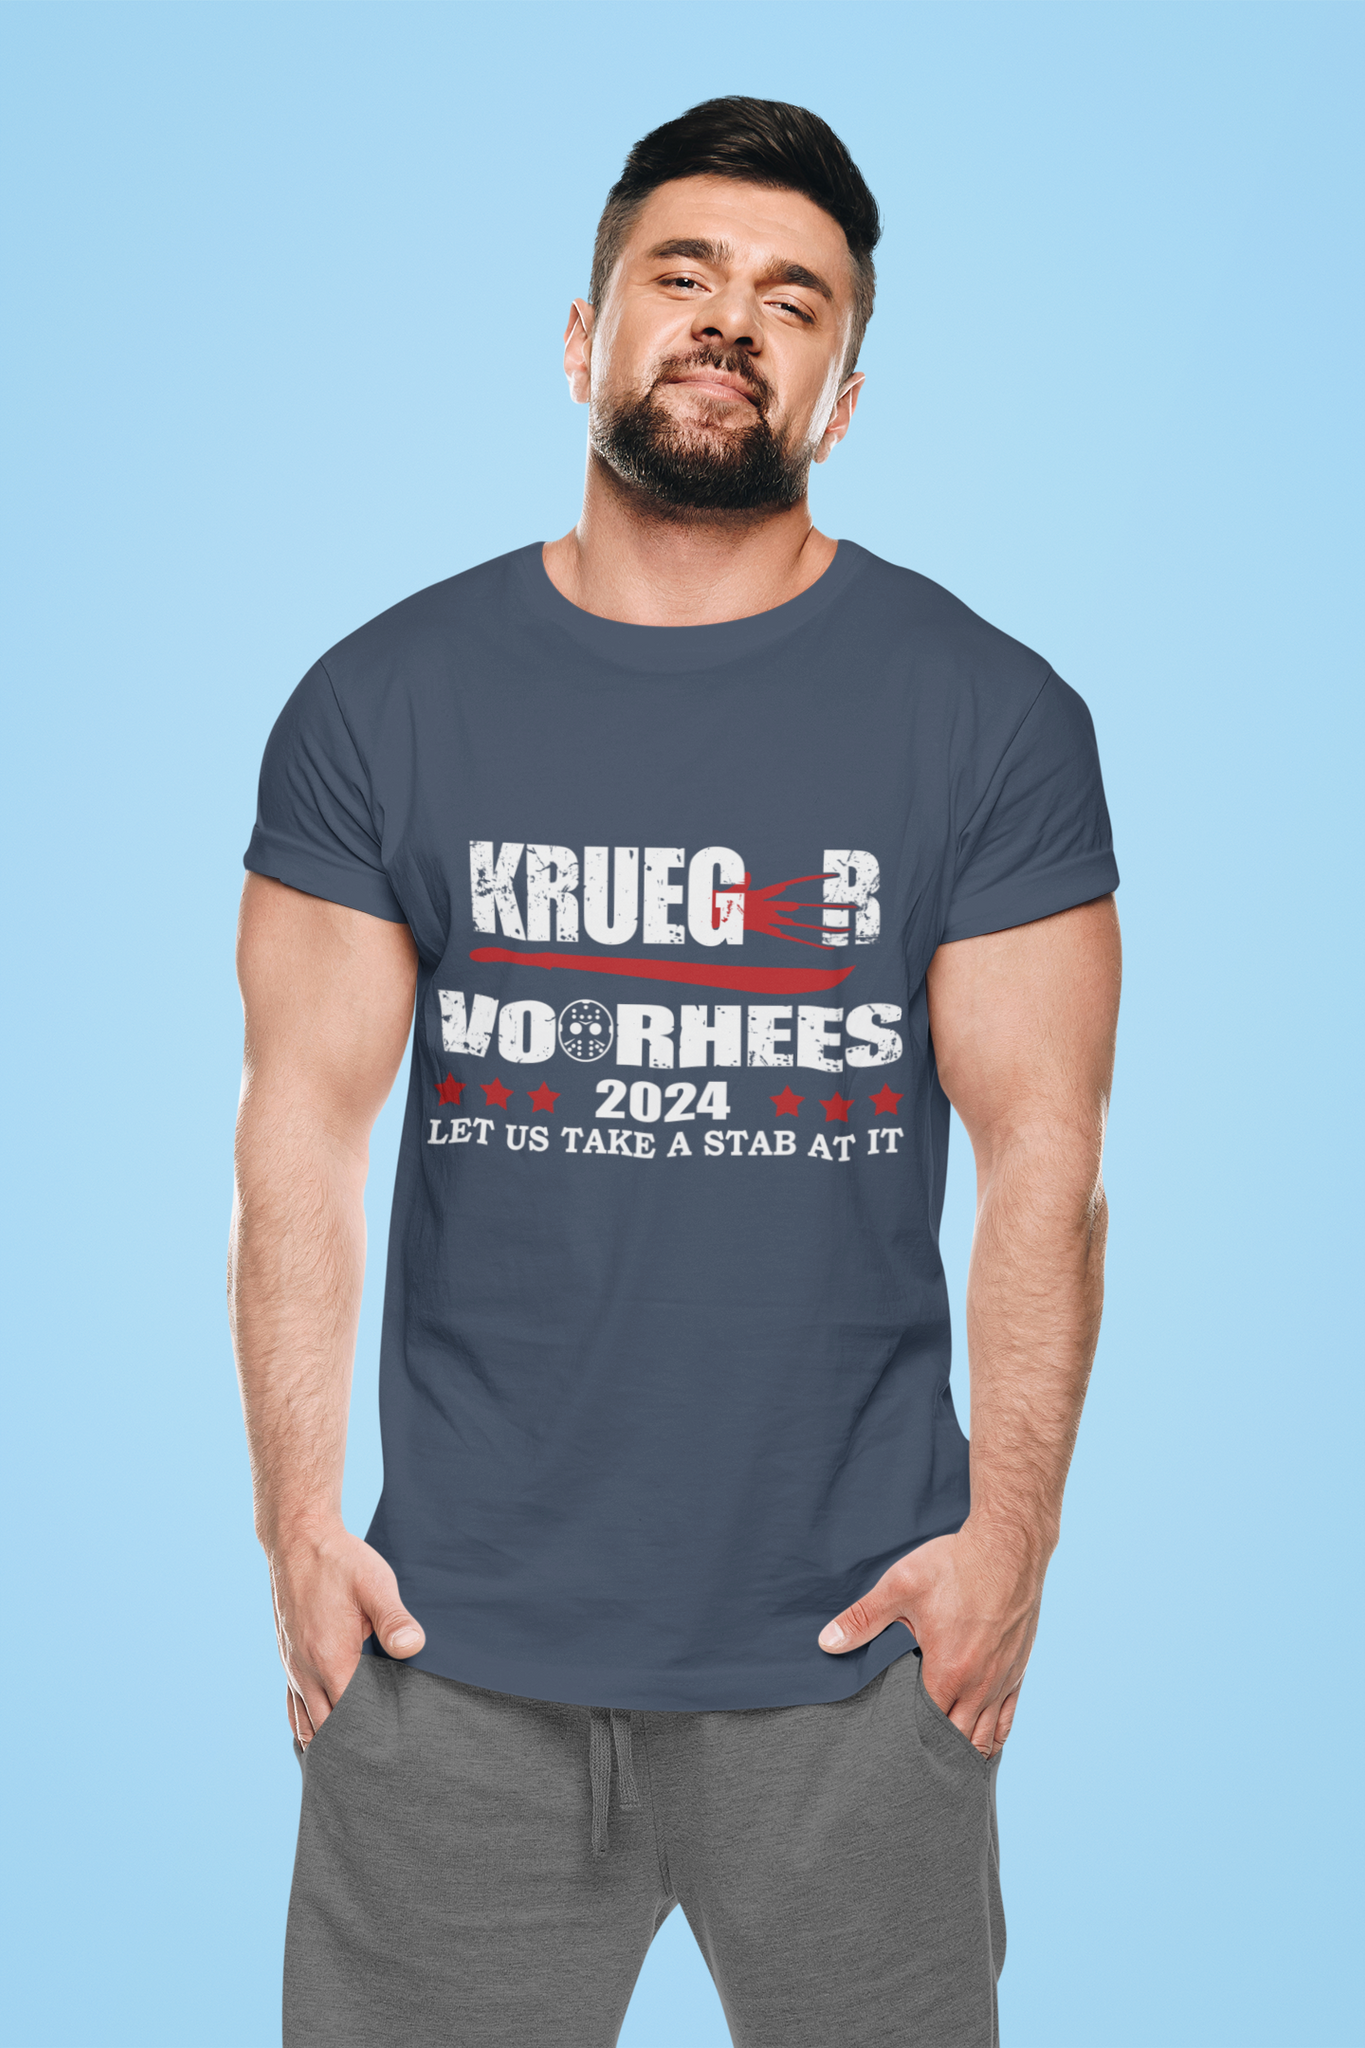 Nightmare On Elm Street T Shirt, Krueger Voorhees President 2024 Tshirt, Let Us Take A Stab At It Tshirt